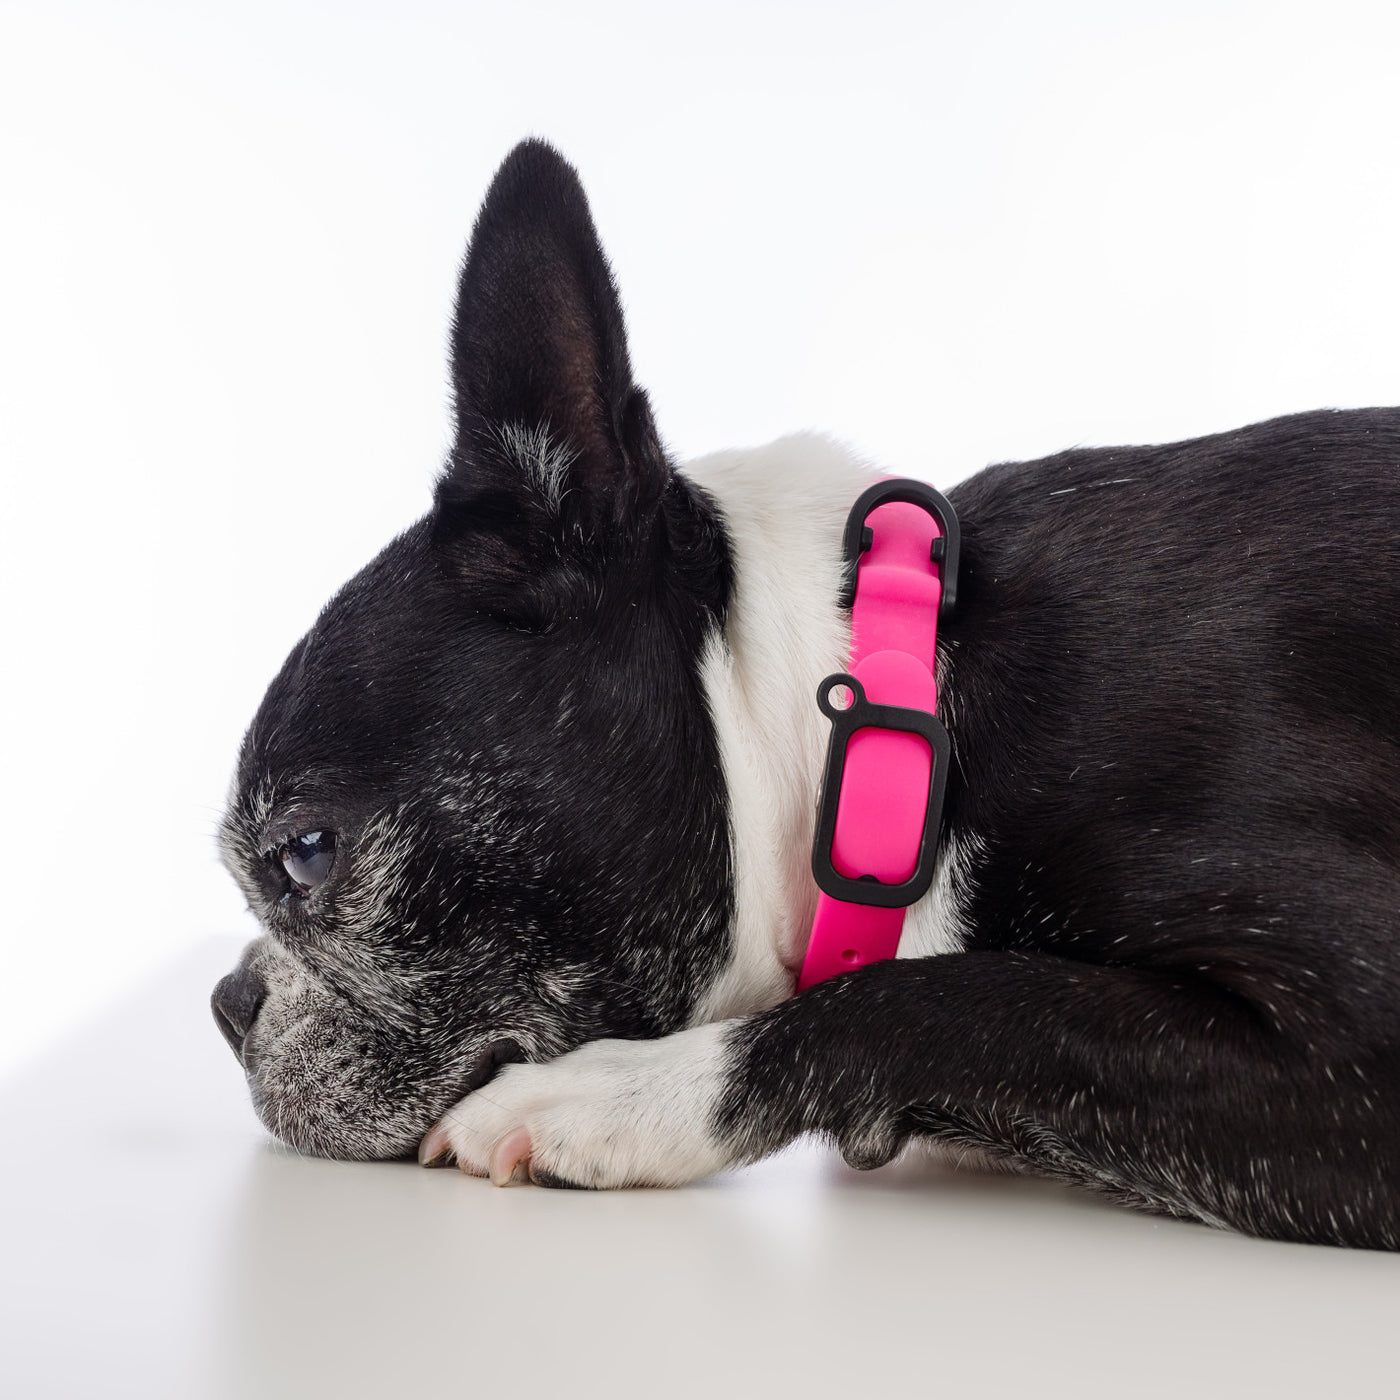 Boston Terrier wearing pink collar